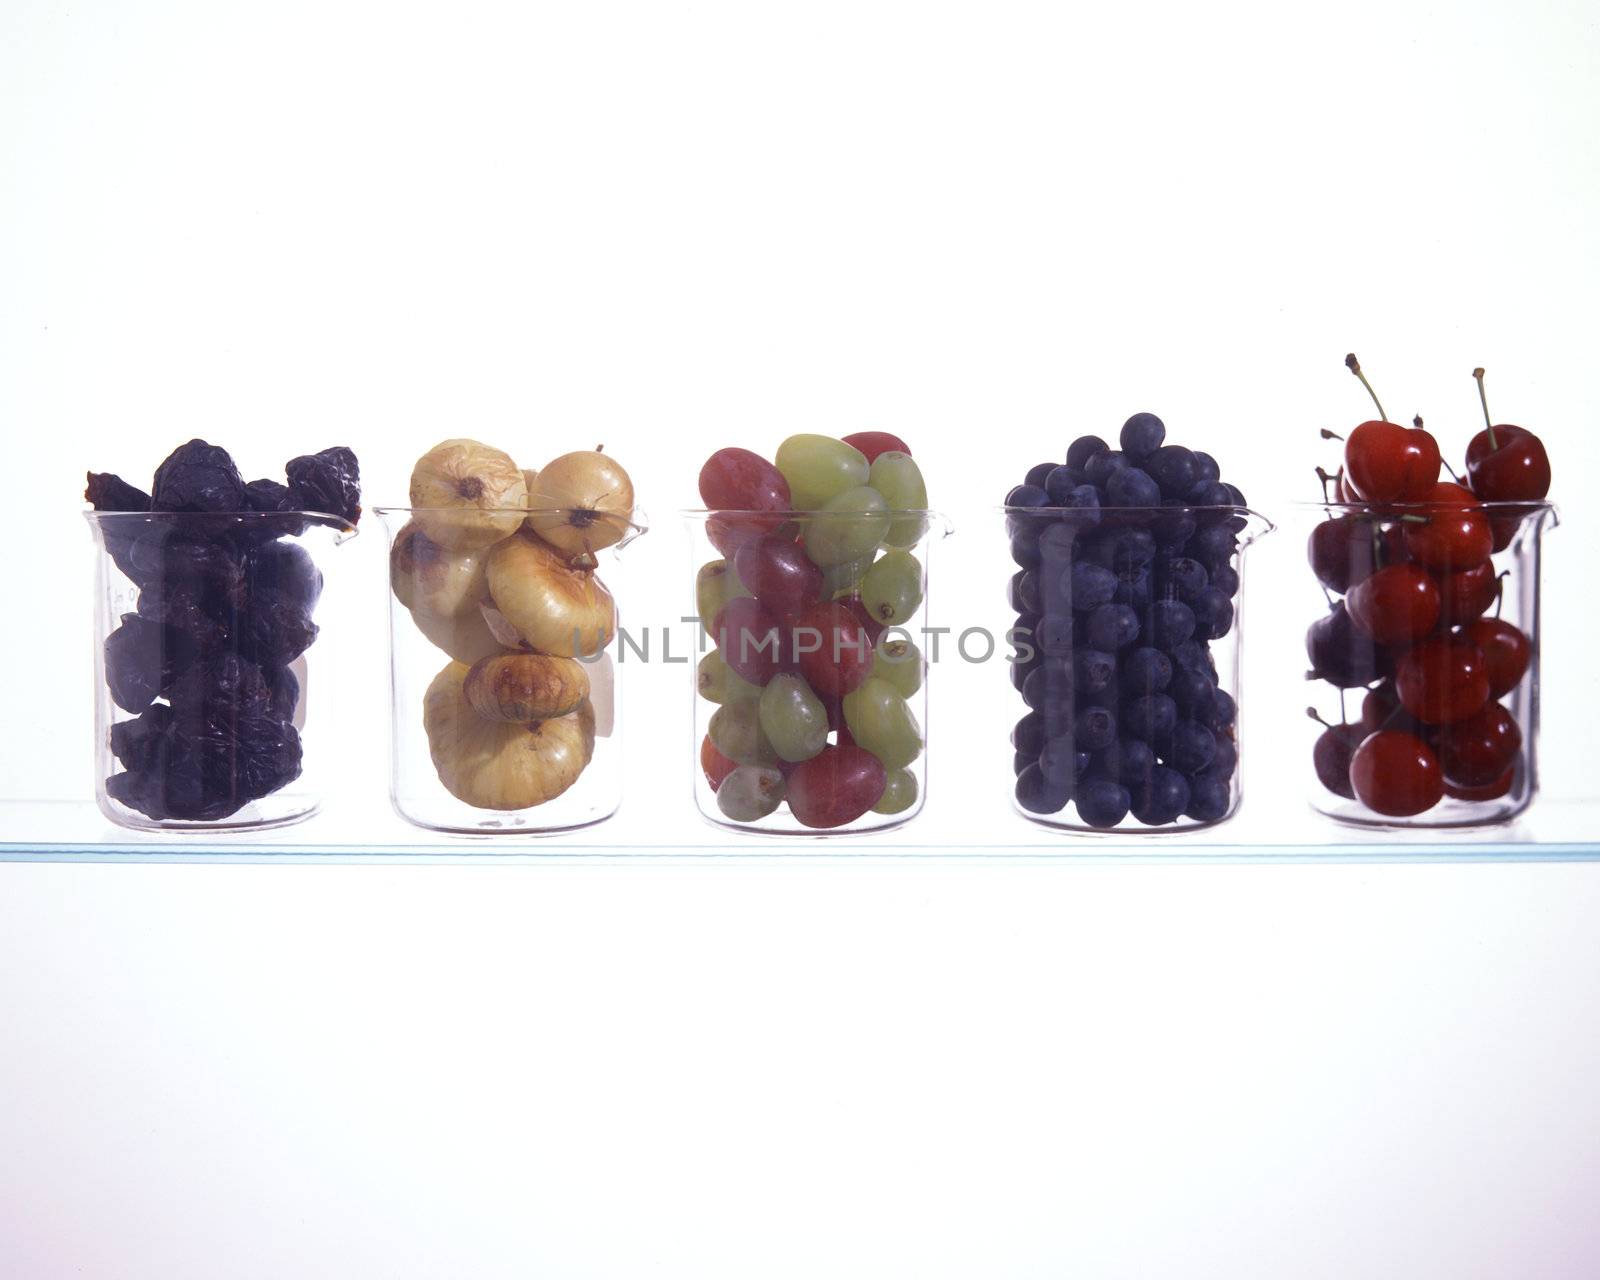 Beakerful of Fruit  by DirkWestphal